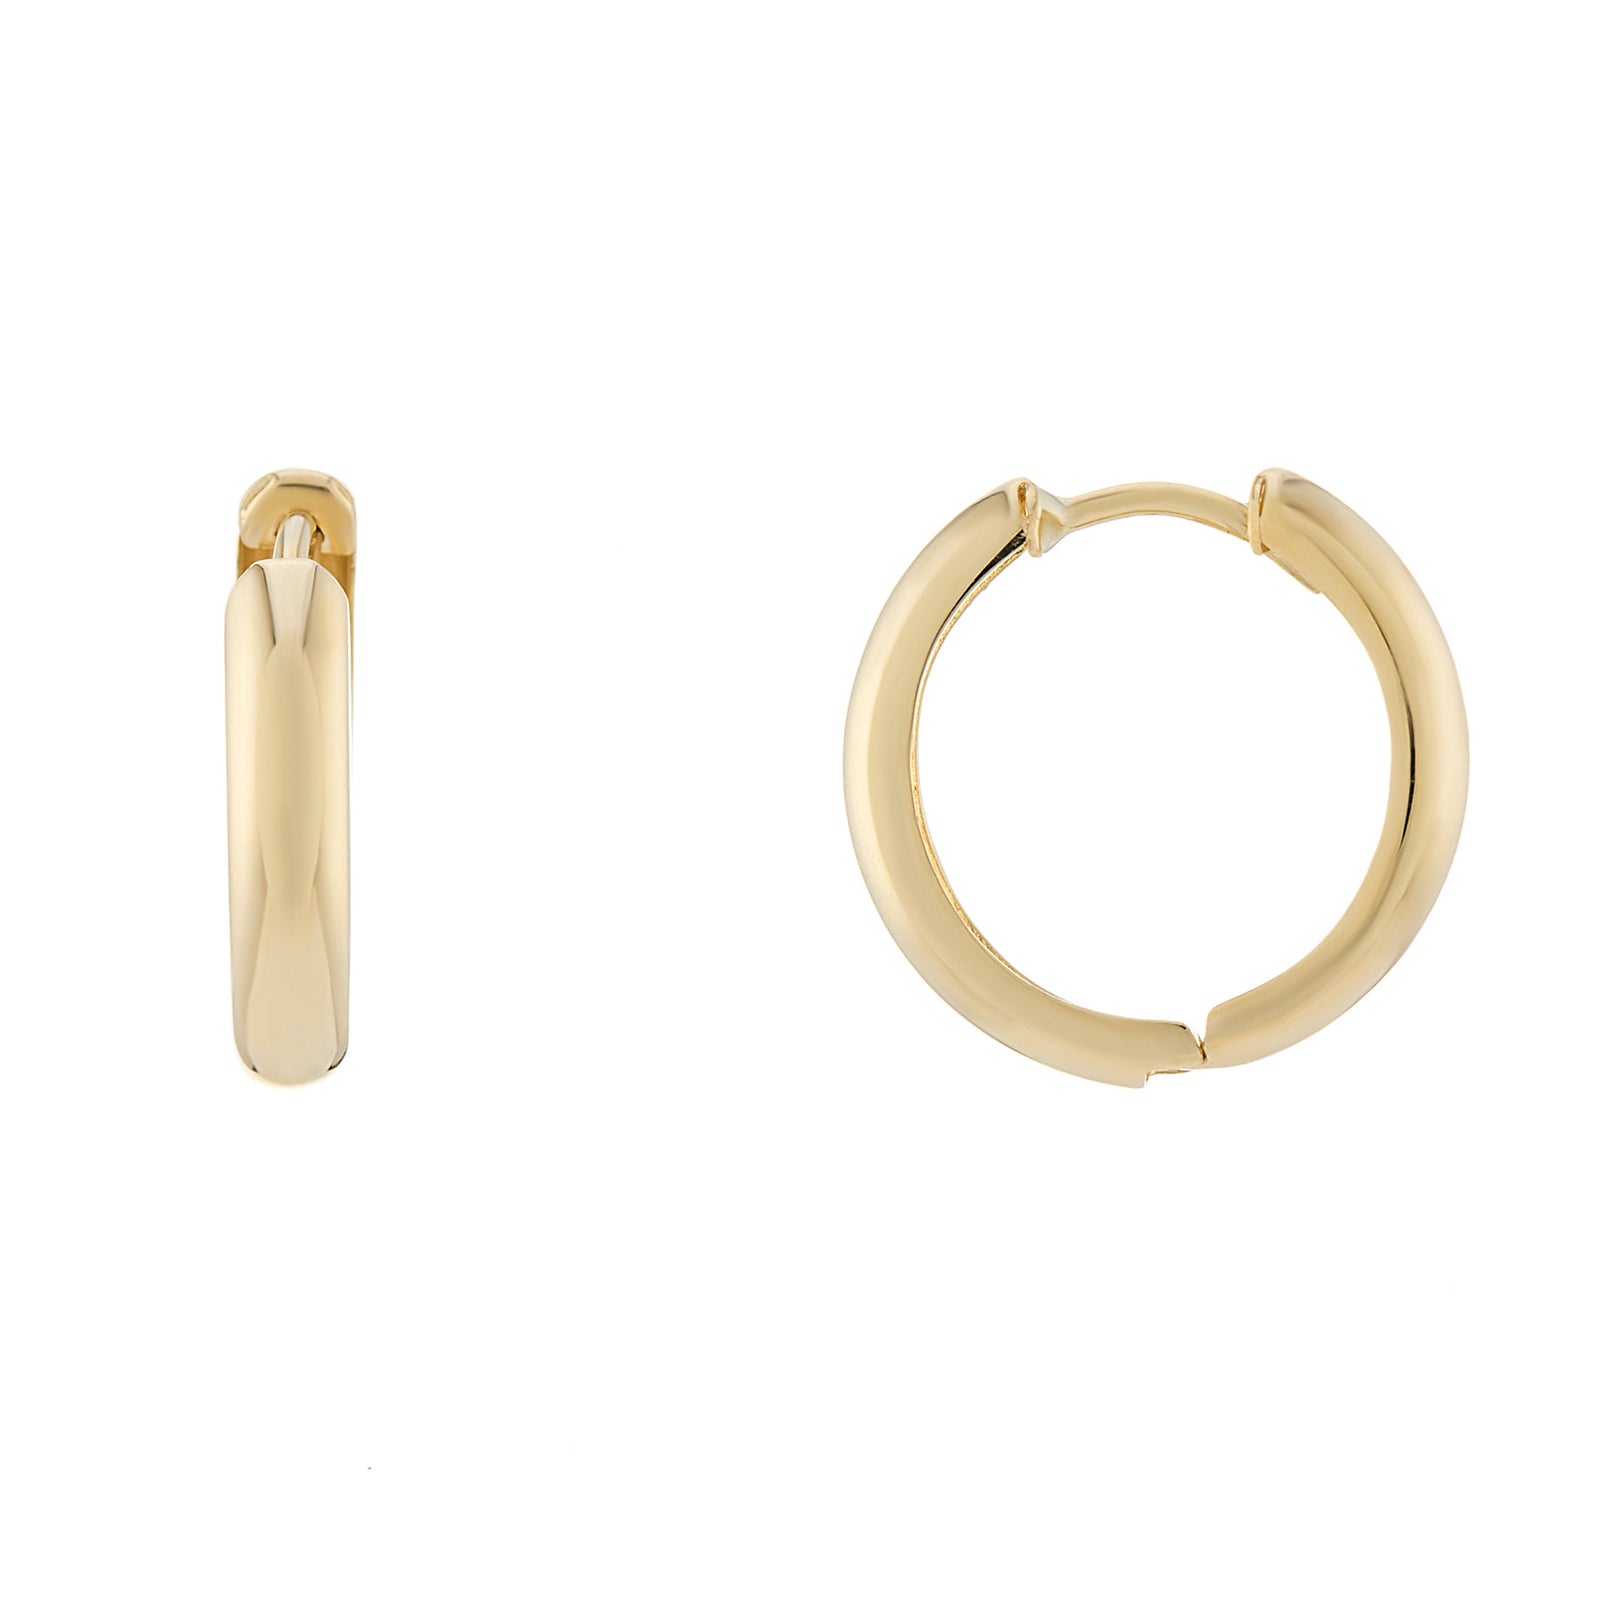 9ct gold 11mm inside diameter huggy earrings